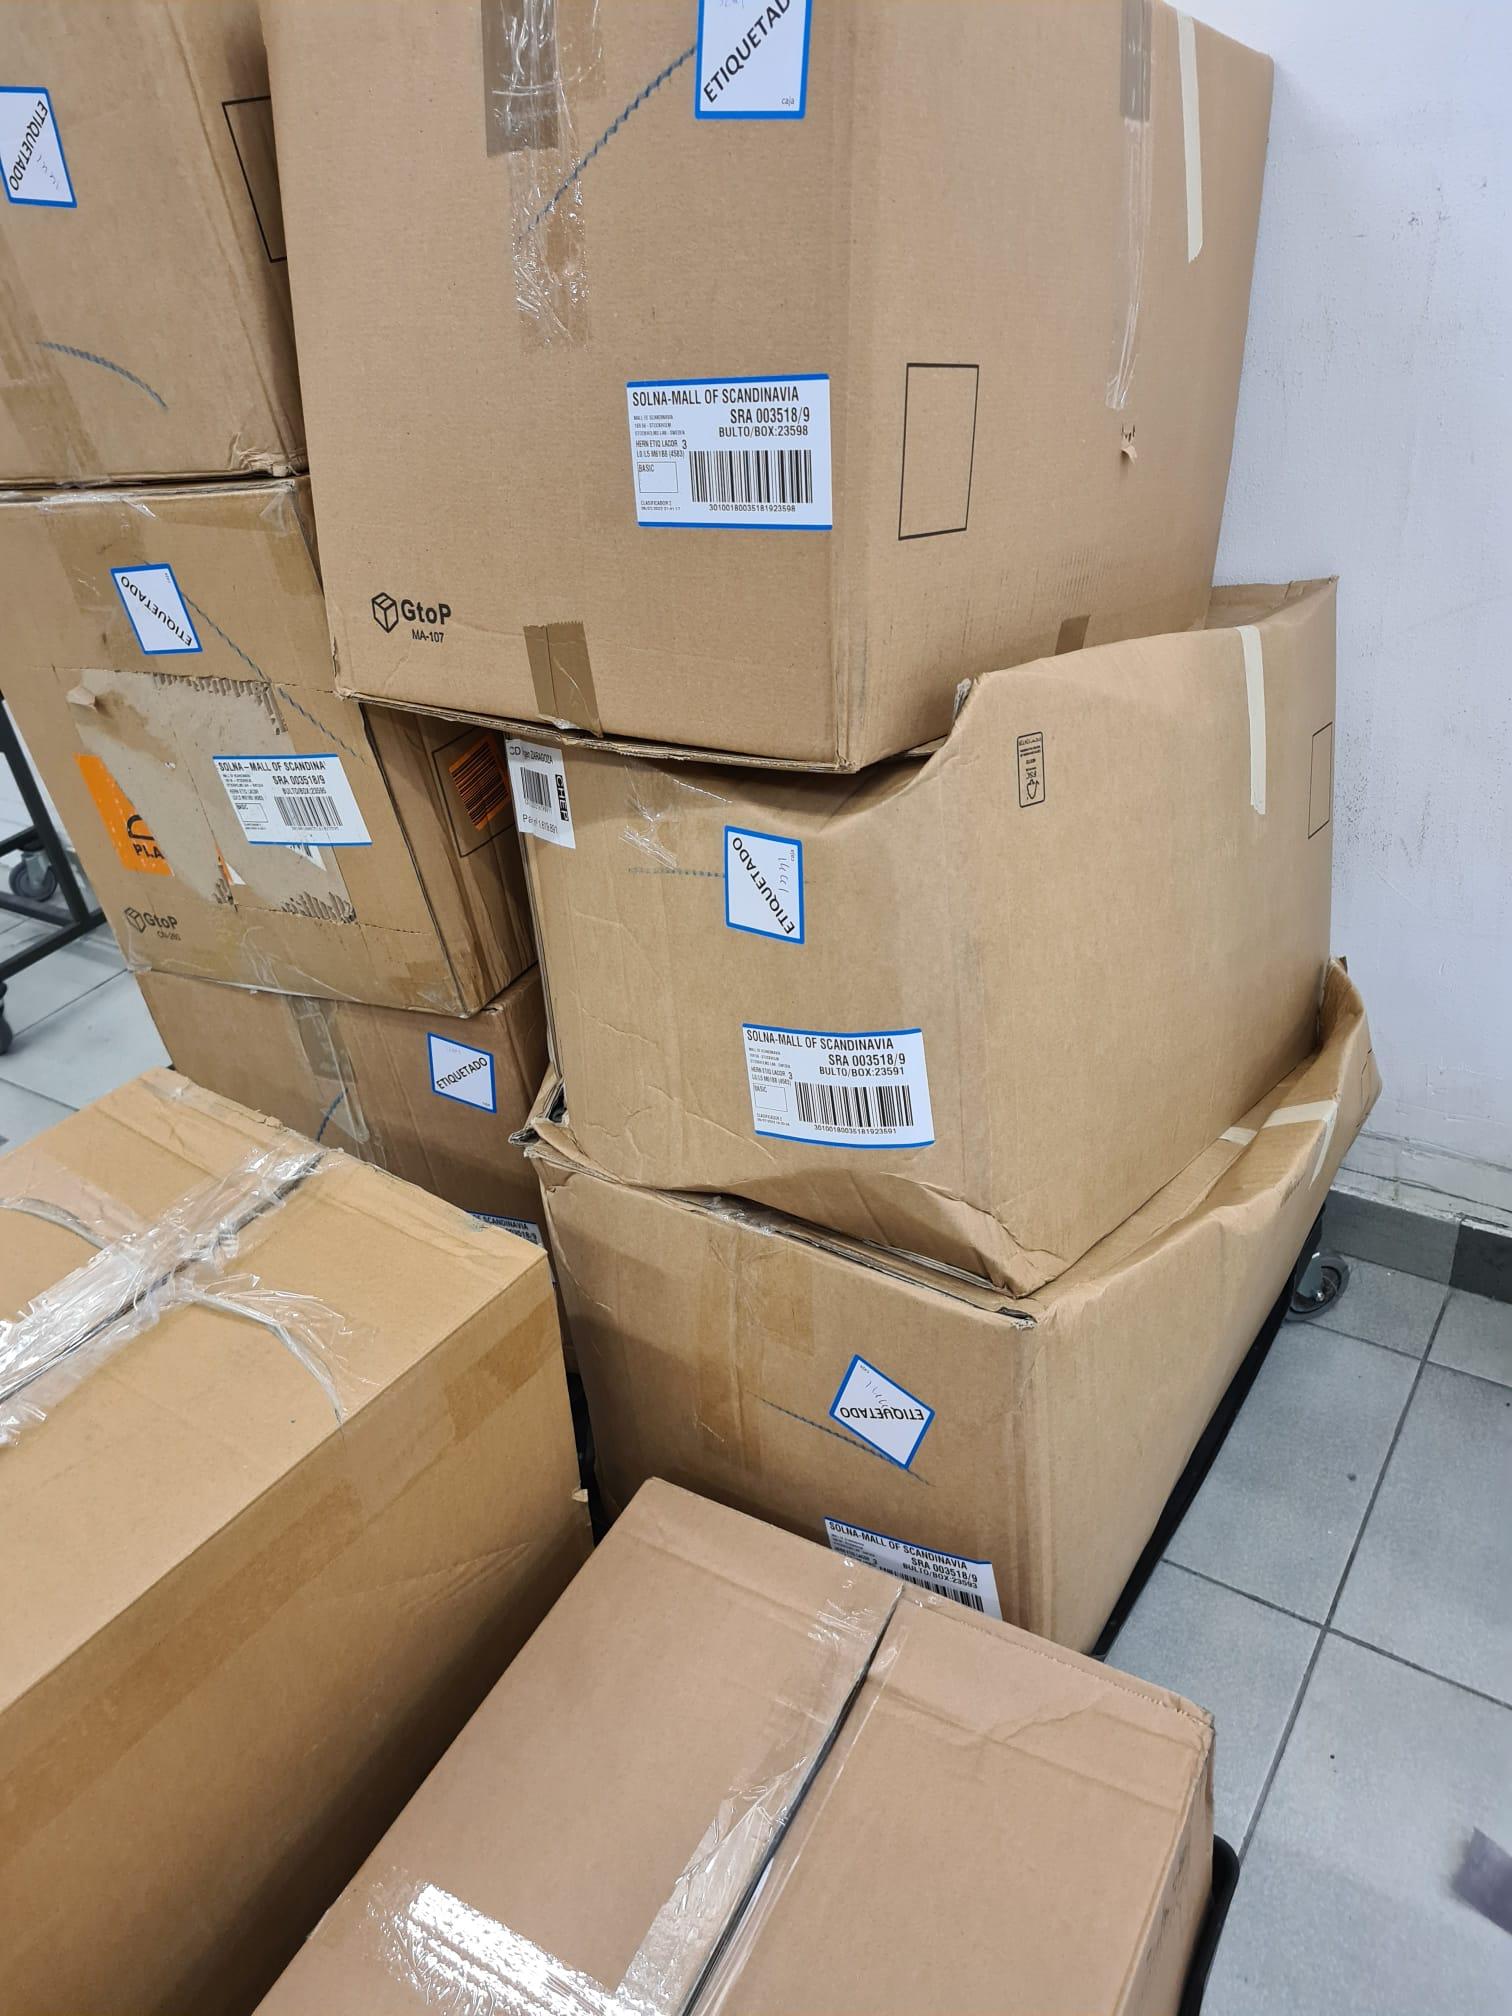 Una Subotic fick en allvarlig arbetsskada i ryggen när hon packade upp sådana här lådor med kläder i Zaras lagerlokal i Mall of Scandinavia.